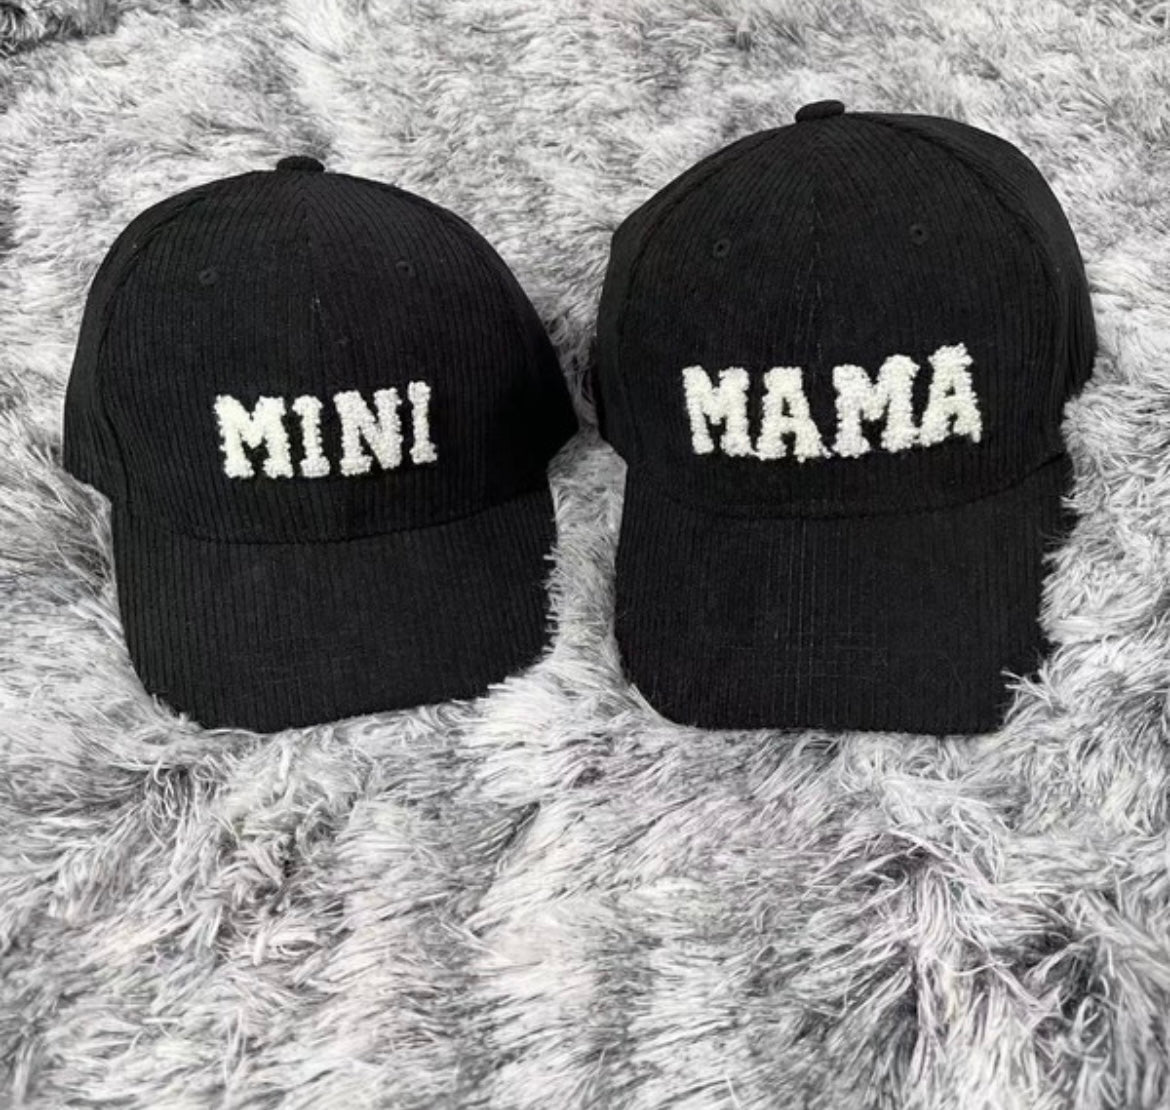 Mama + Mini Hats